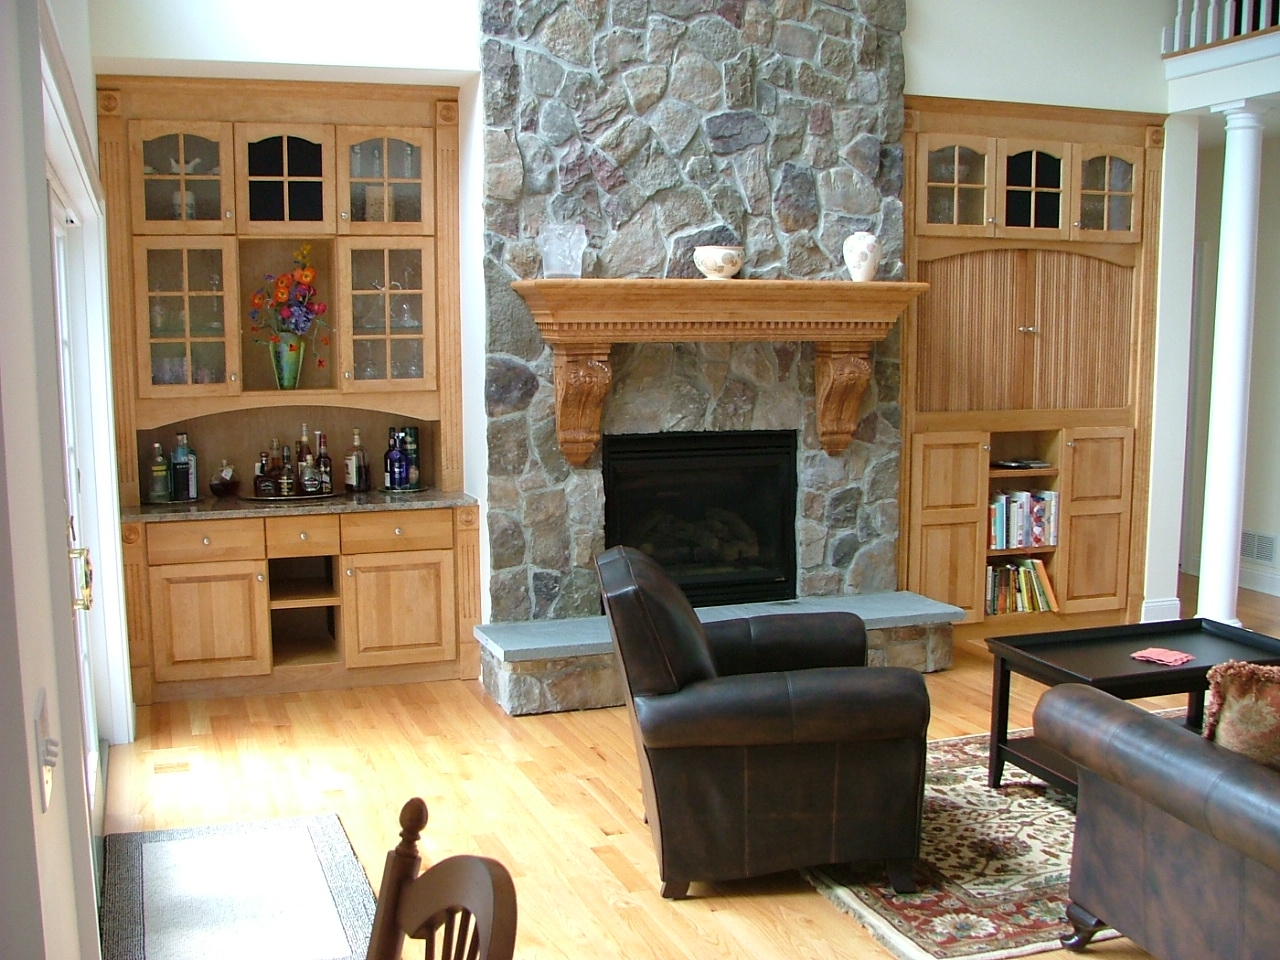 دو مدل کمد دکوری چوبی قهوه ای در دو طرف شومینه به شکل قرینه در پذیرایی خانه